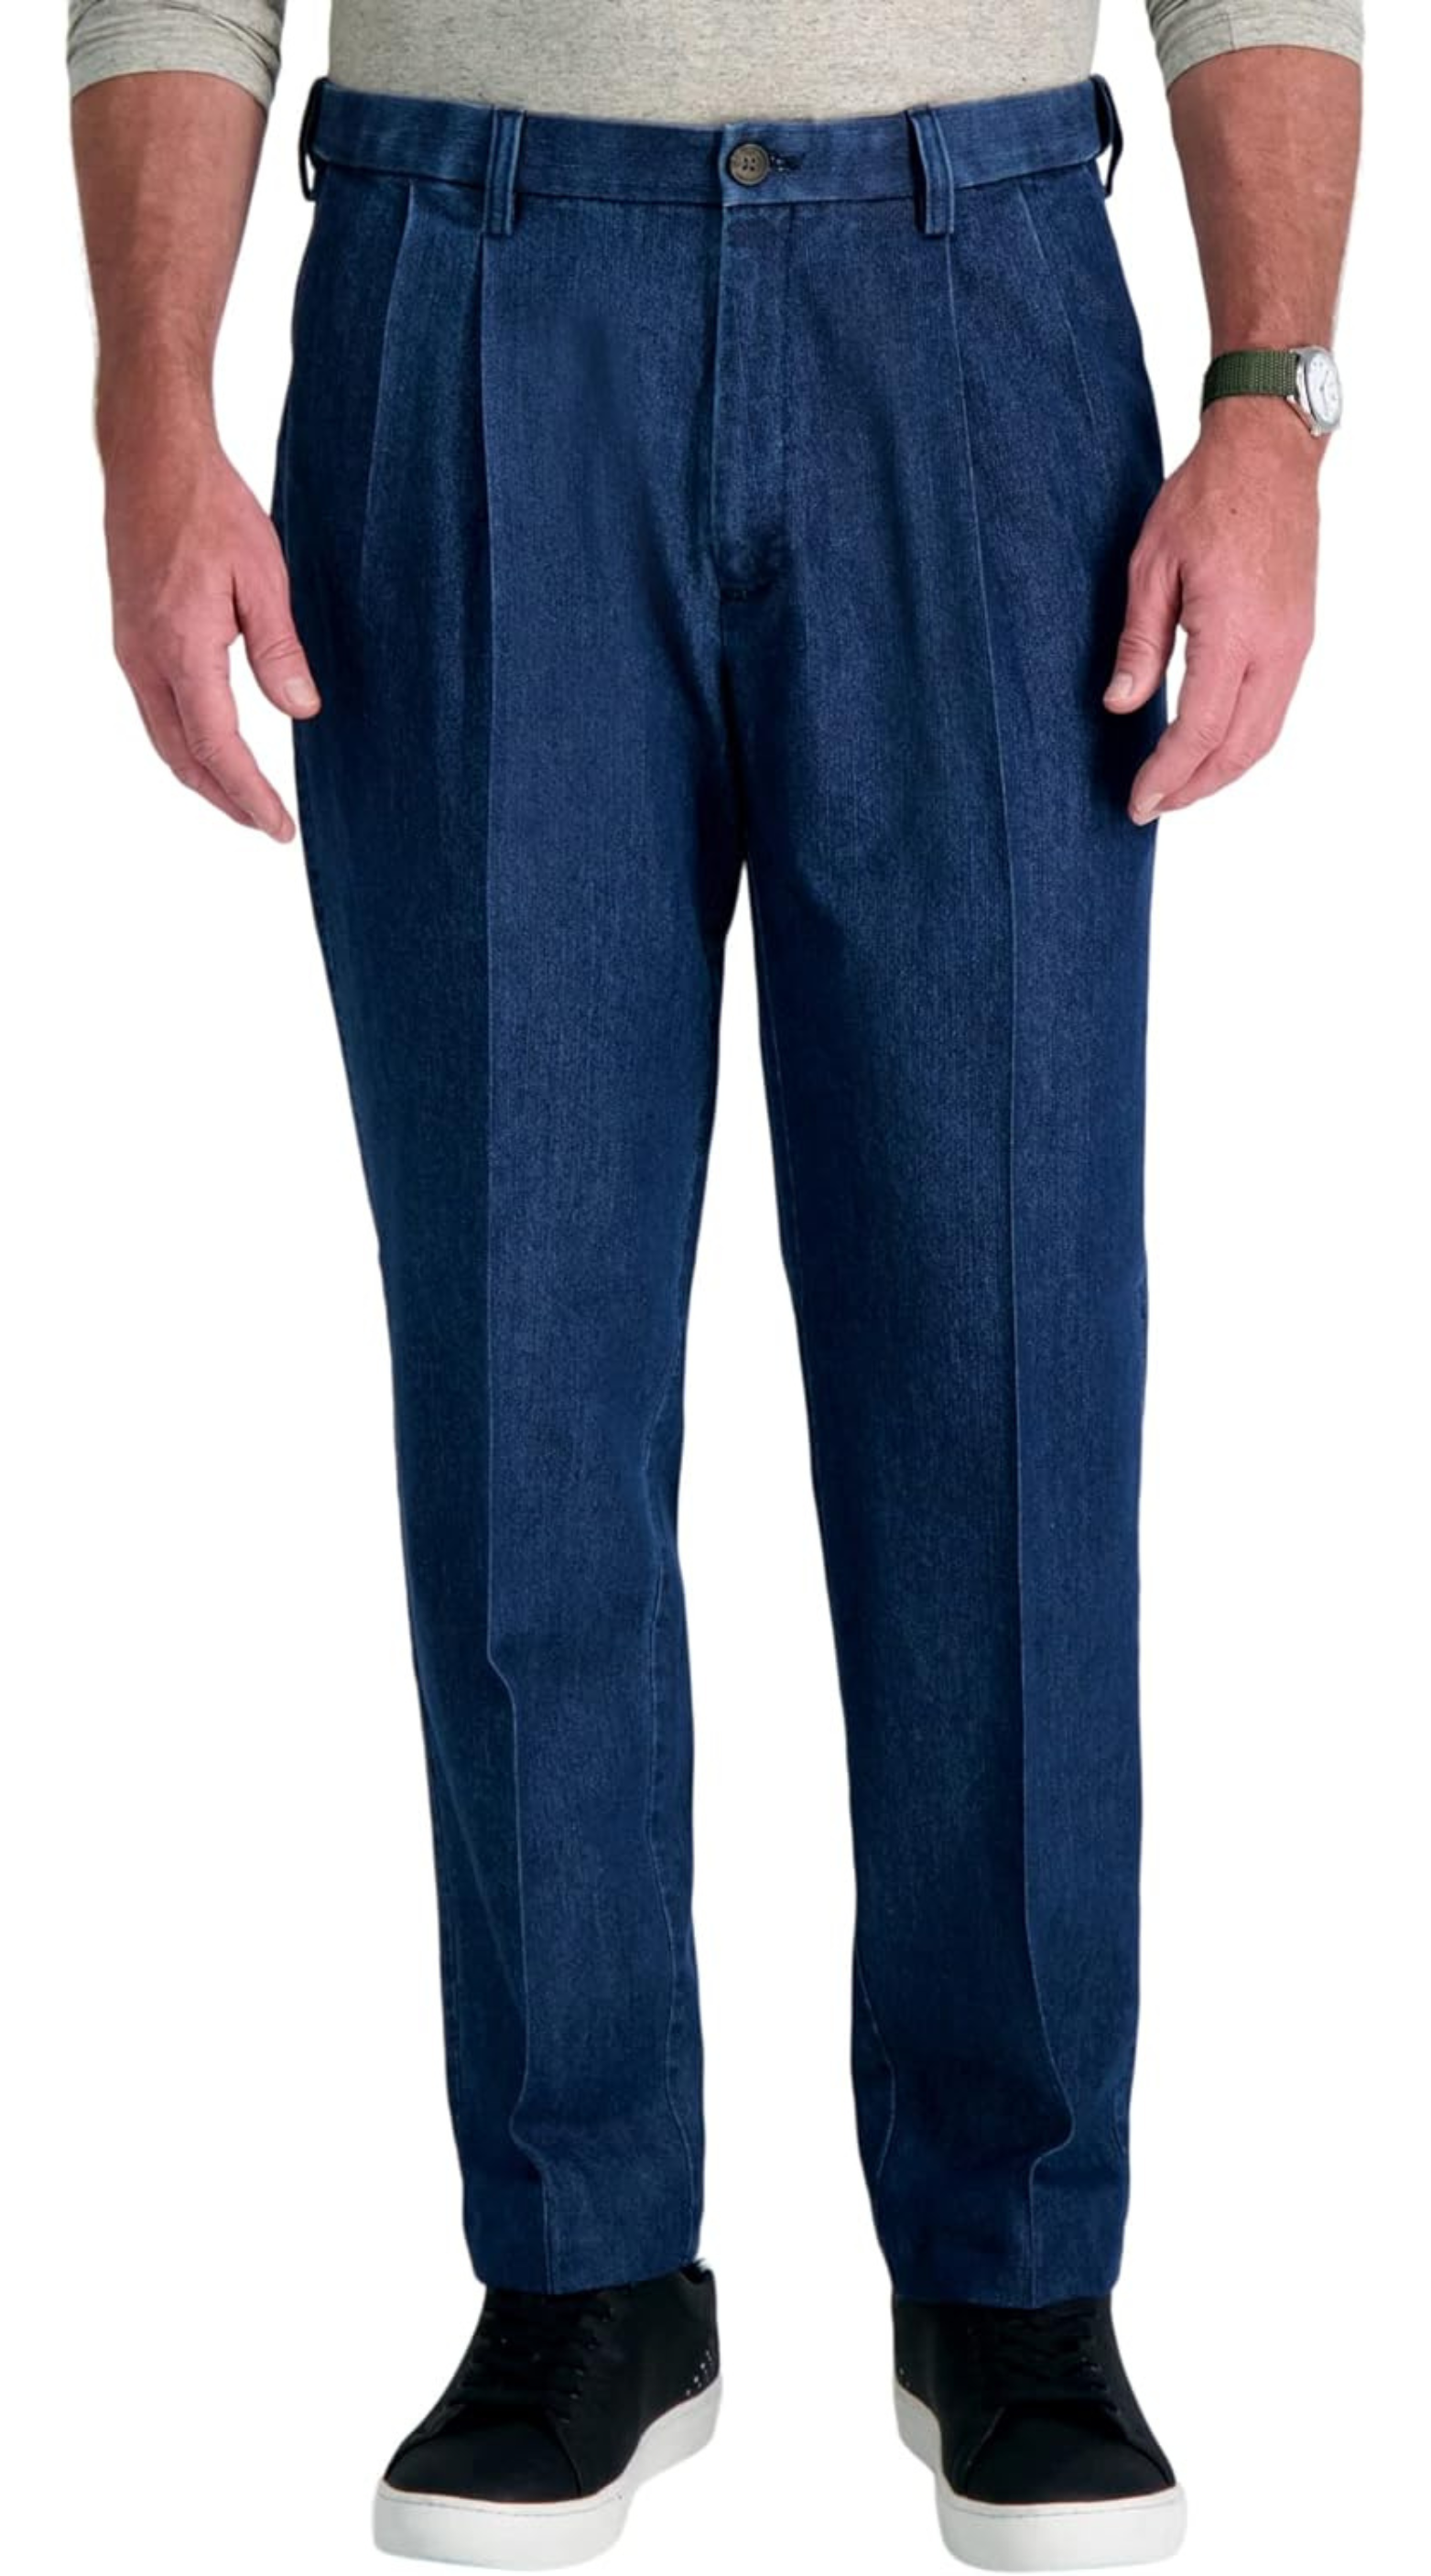 سروال جينز رجالي كبير وطويل بحزام خصر قابل للتوسيع بطيات أمامية من هاغر